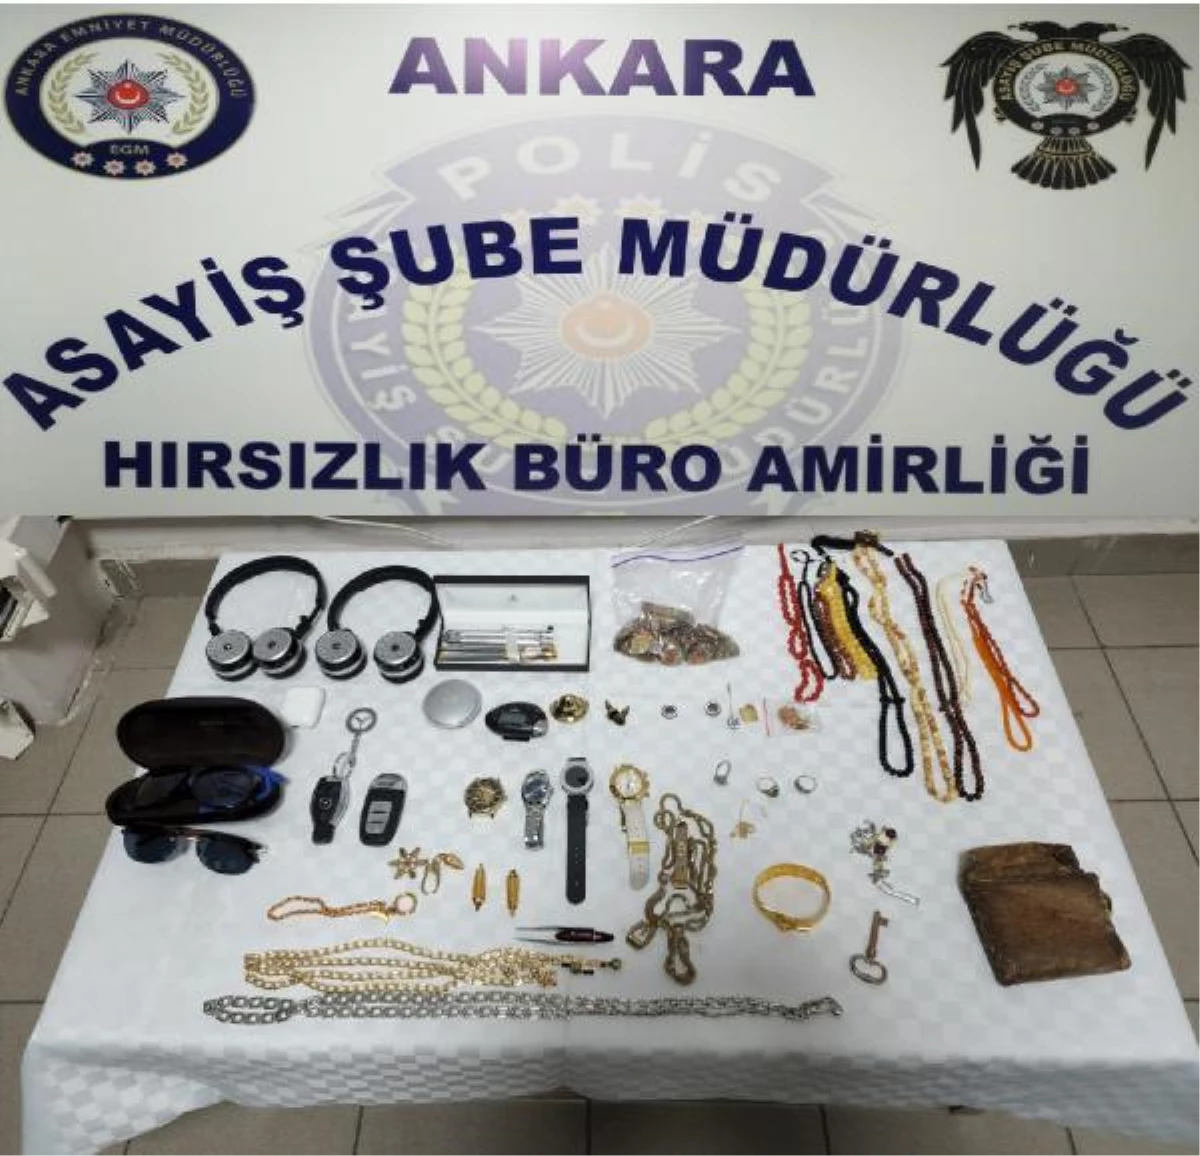 Son dakika haberleri... Ankara\'da otomobil ve ziynet eşyası çalan 4 şüpheli tutuklandı